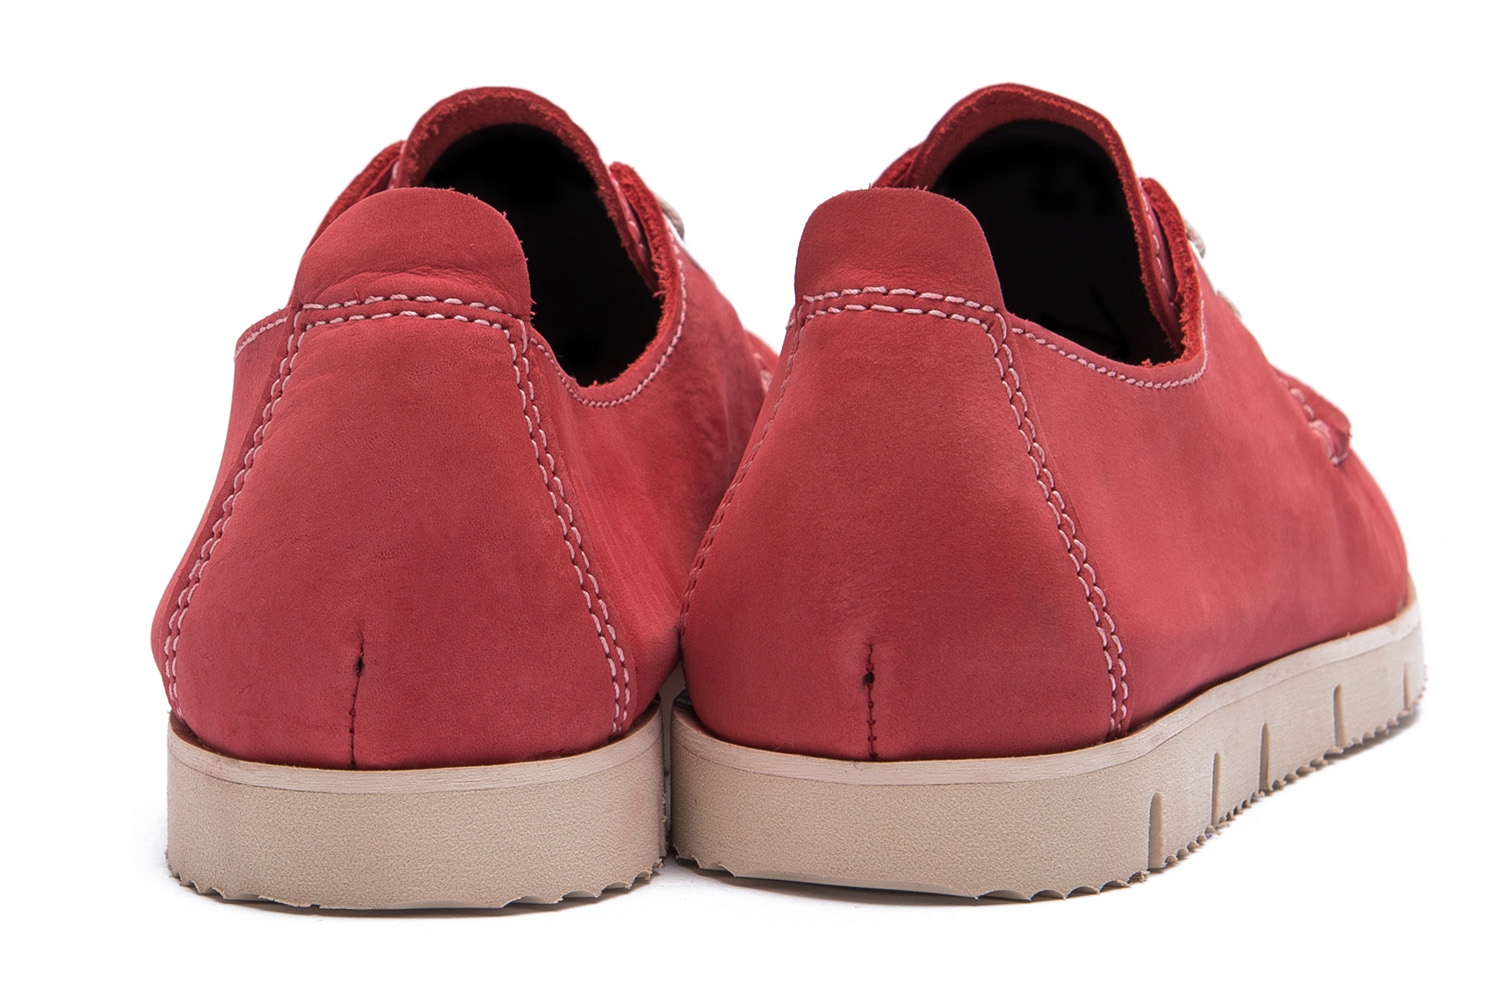 Pantofi rosii piele nabuc 2